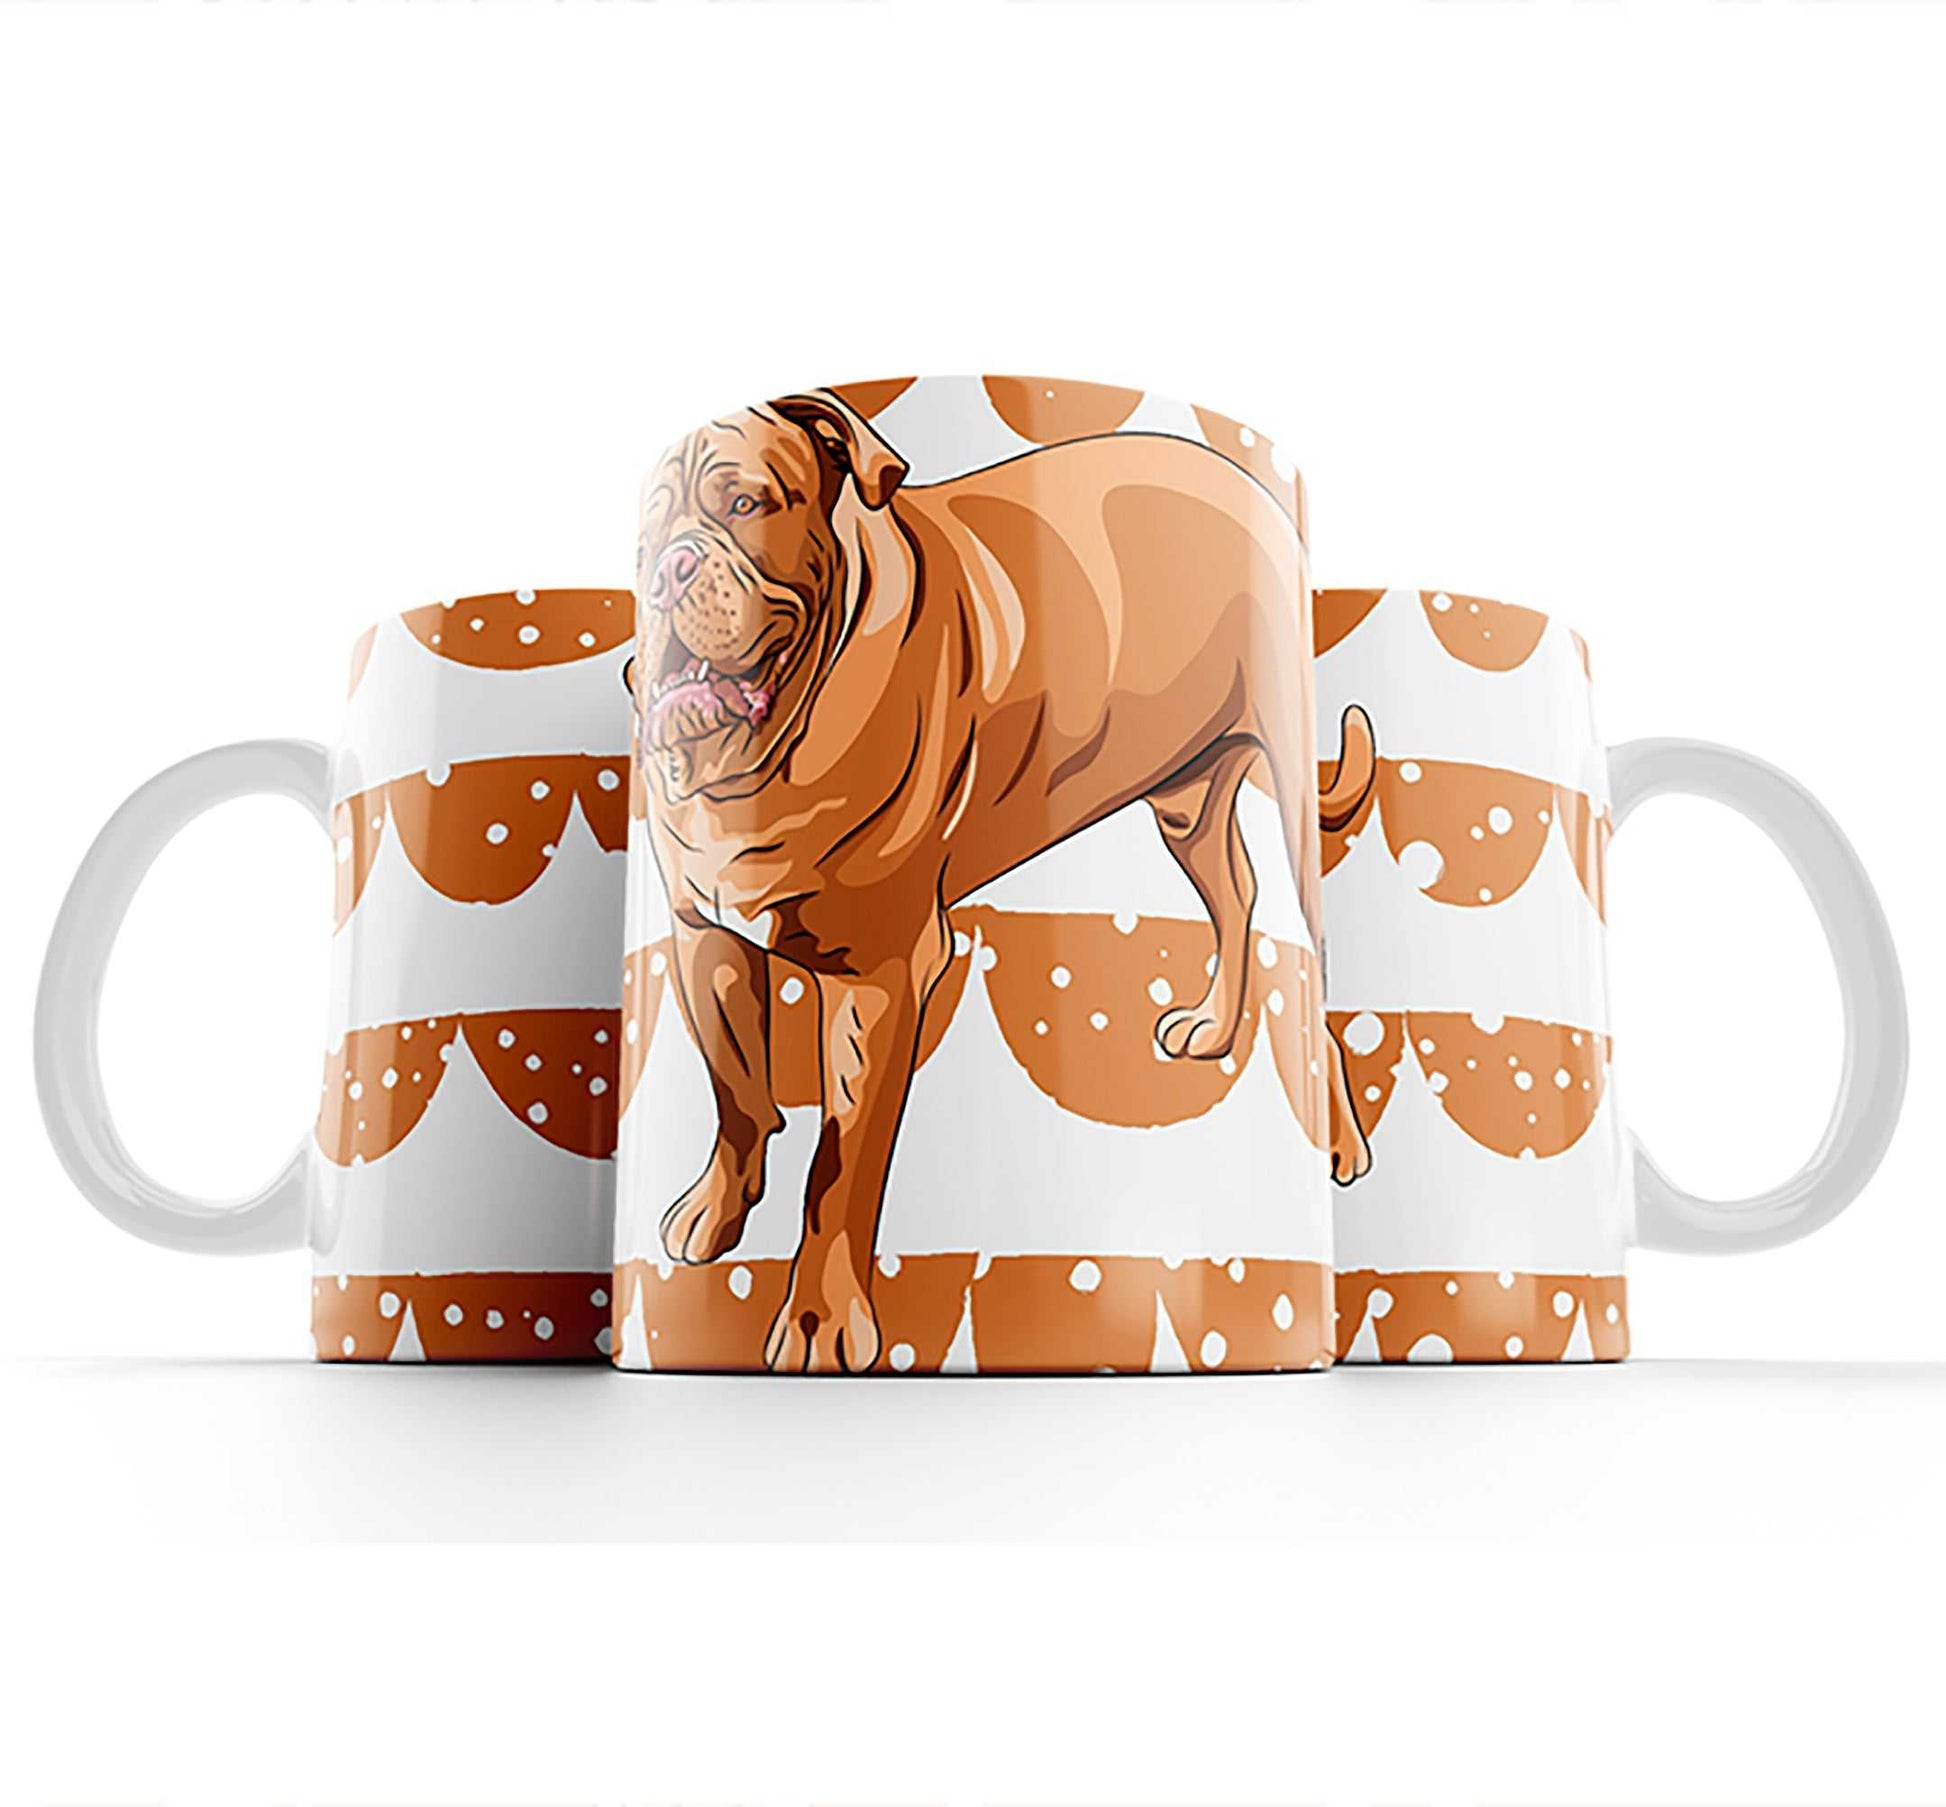  Bull Mastiff Dog Coffee or Tea Mug by Free Spirit Accessories sold by Free Spirit Accessories